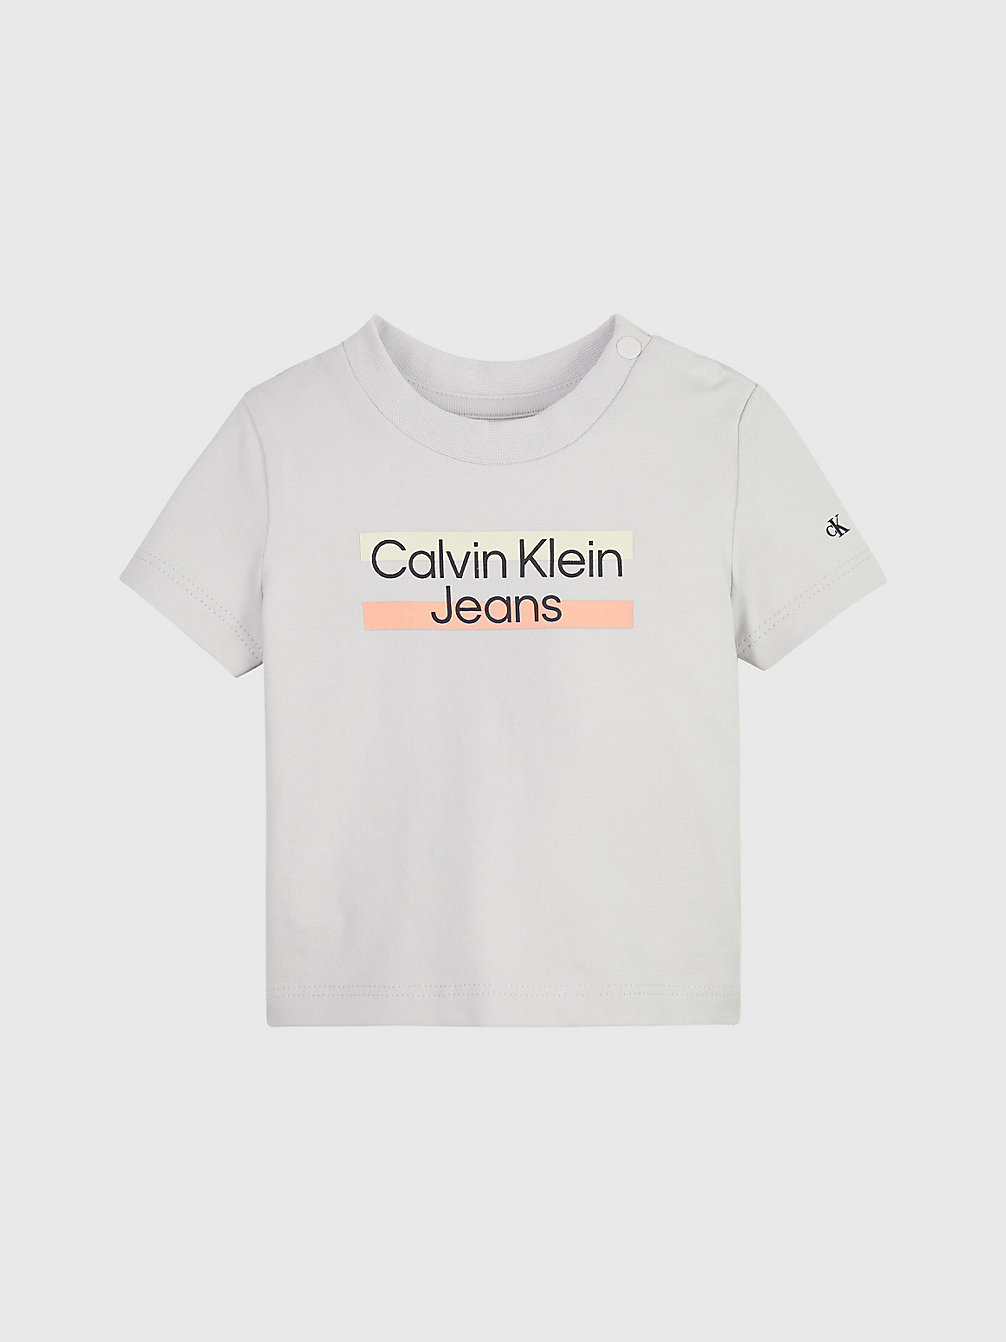 GHOST GREY Newborn Logo T-Shirt undefined newborn Calvin Klein